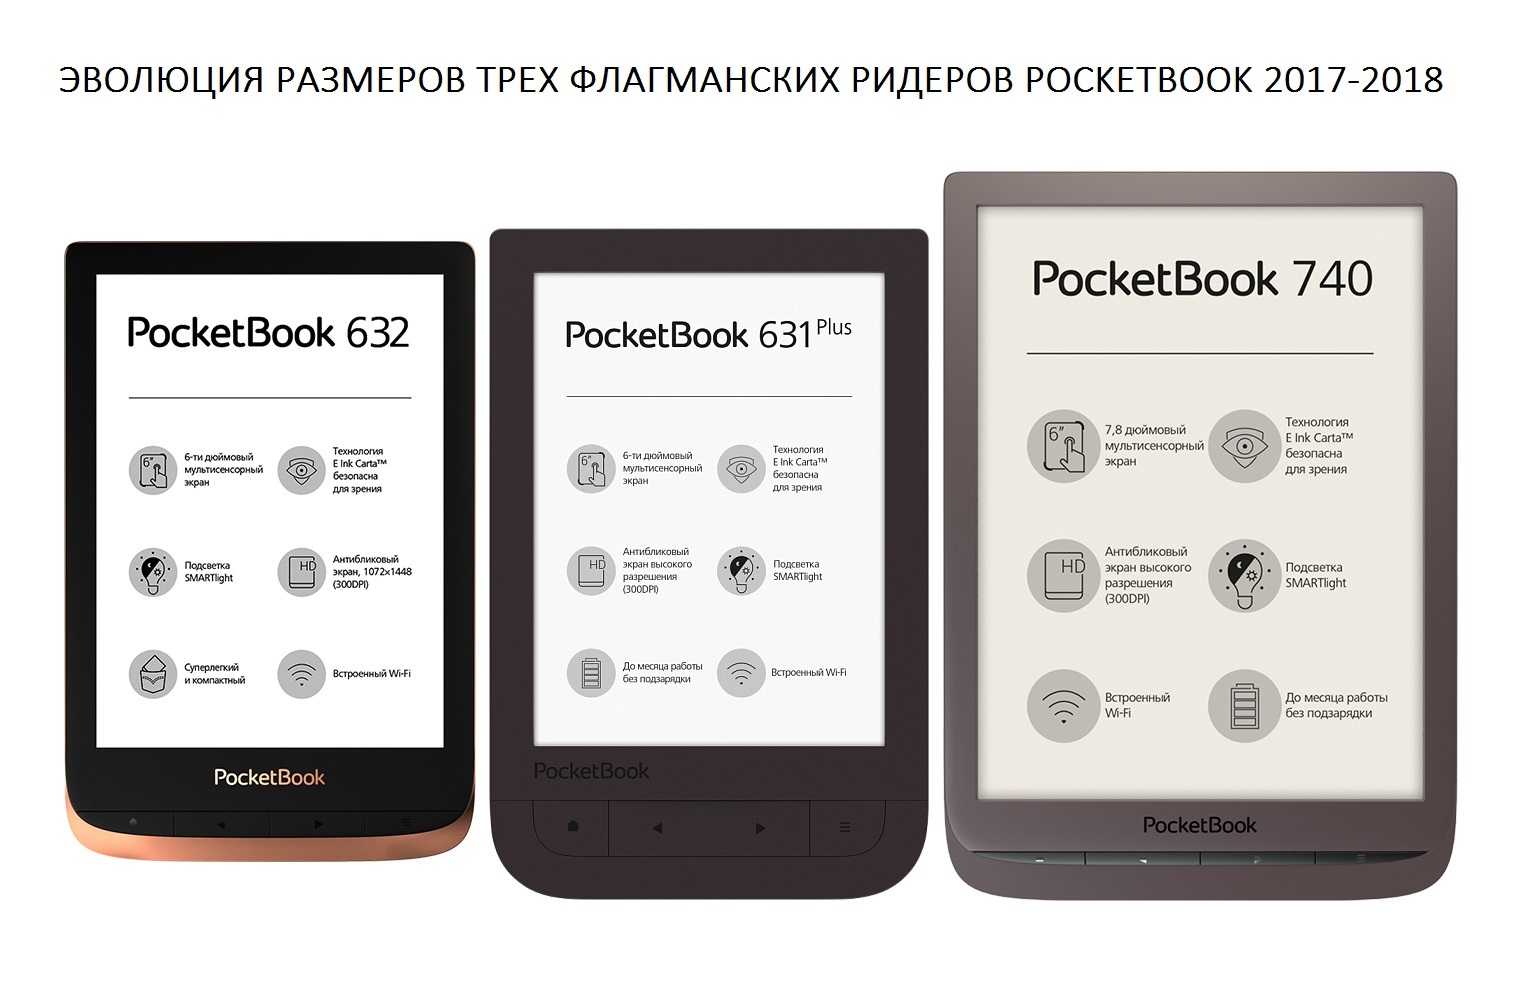 Выбираем электронную книгу: pocketbook против onyx  - обзоры и тесты